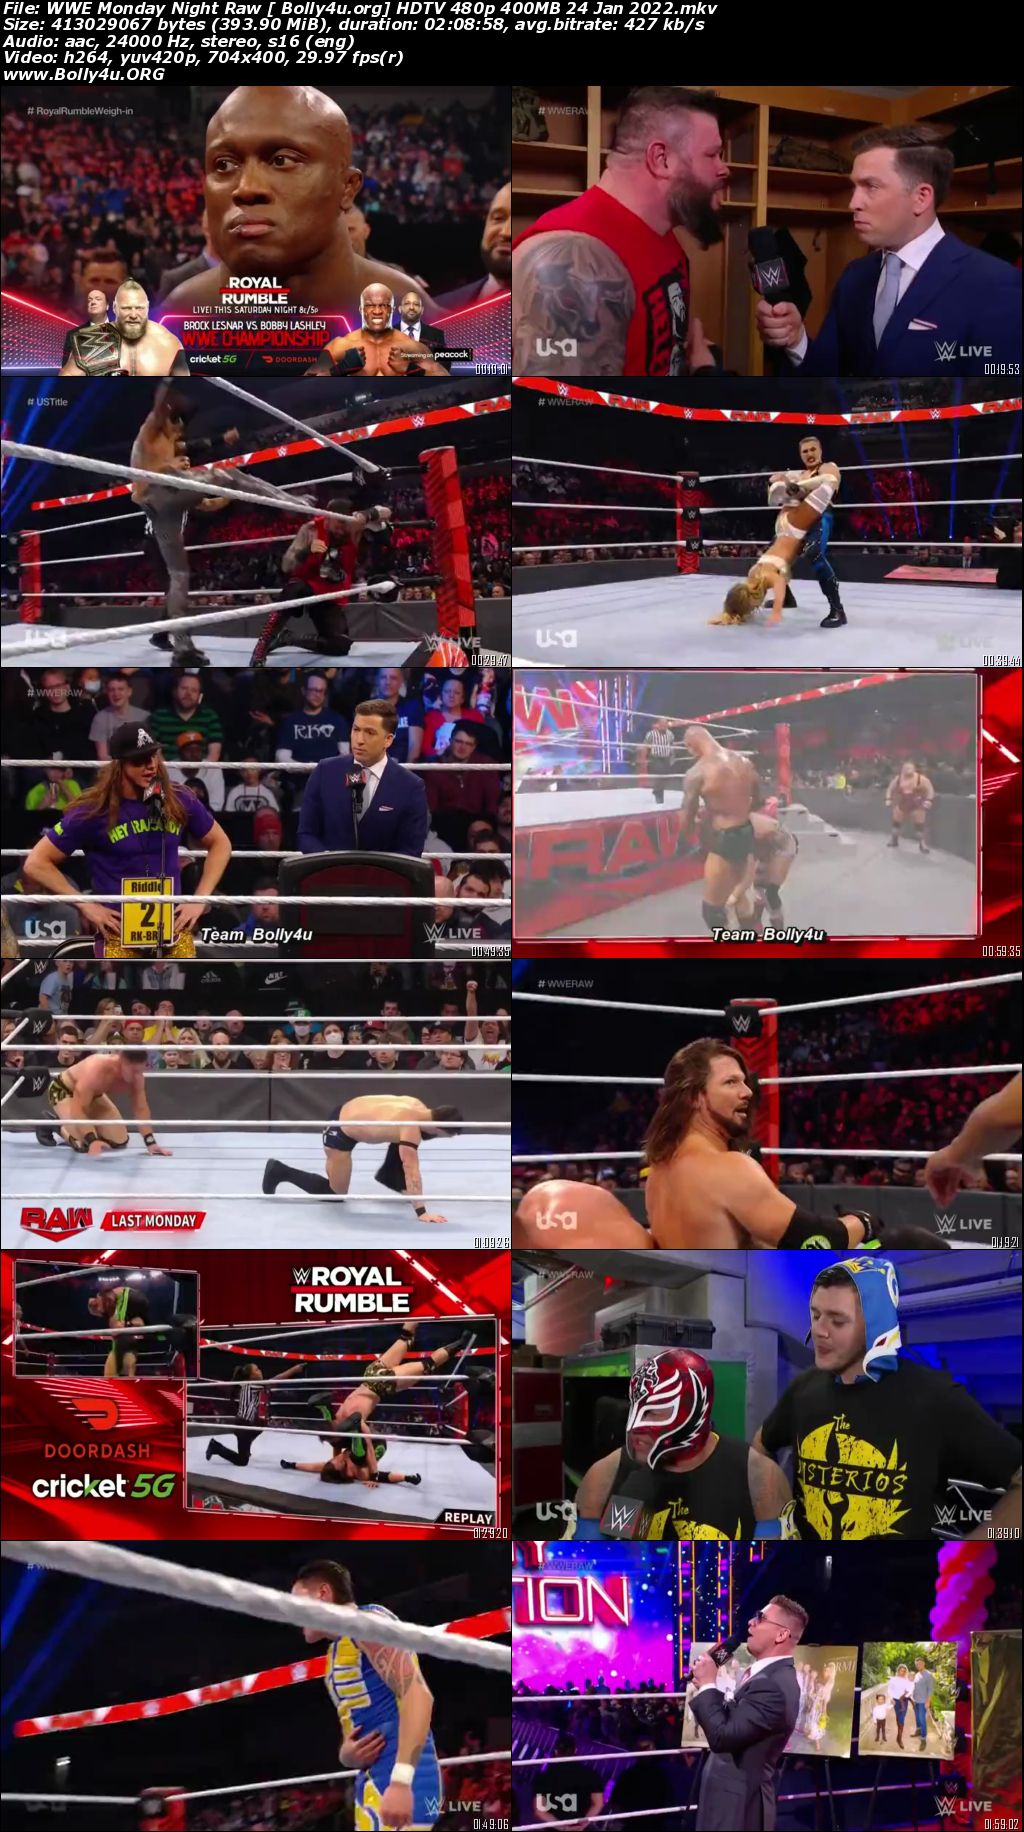 WWE Monday Night Raw HDTV 480p 400MB 24 Jan 2022 Download